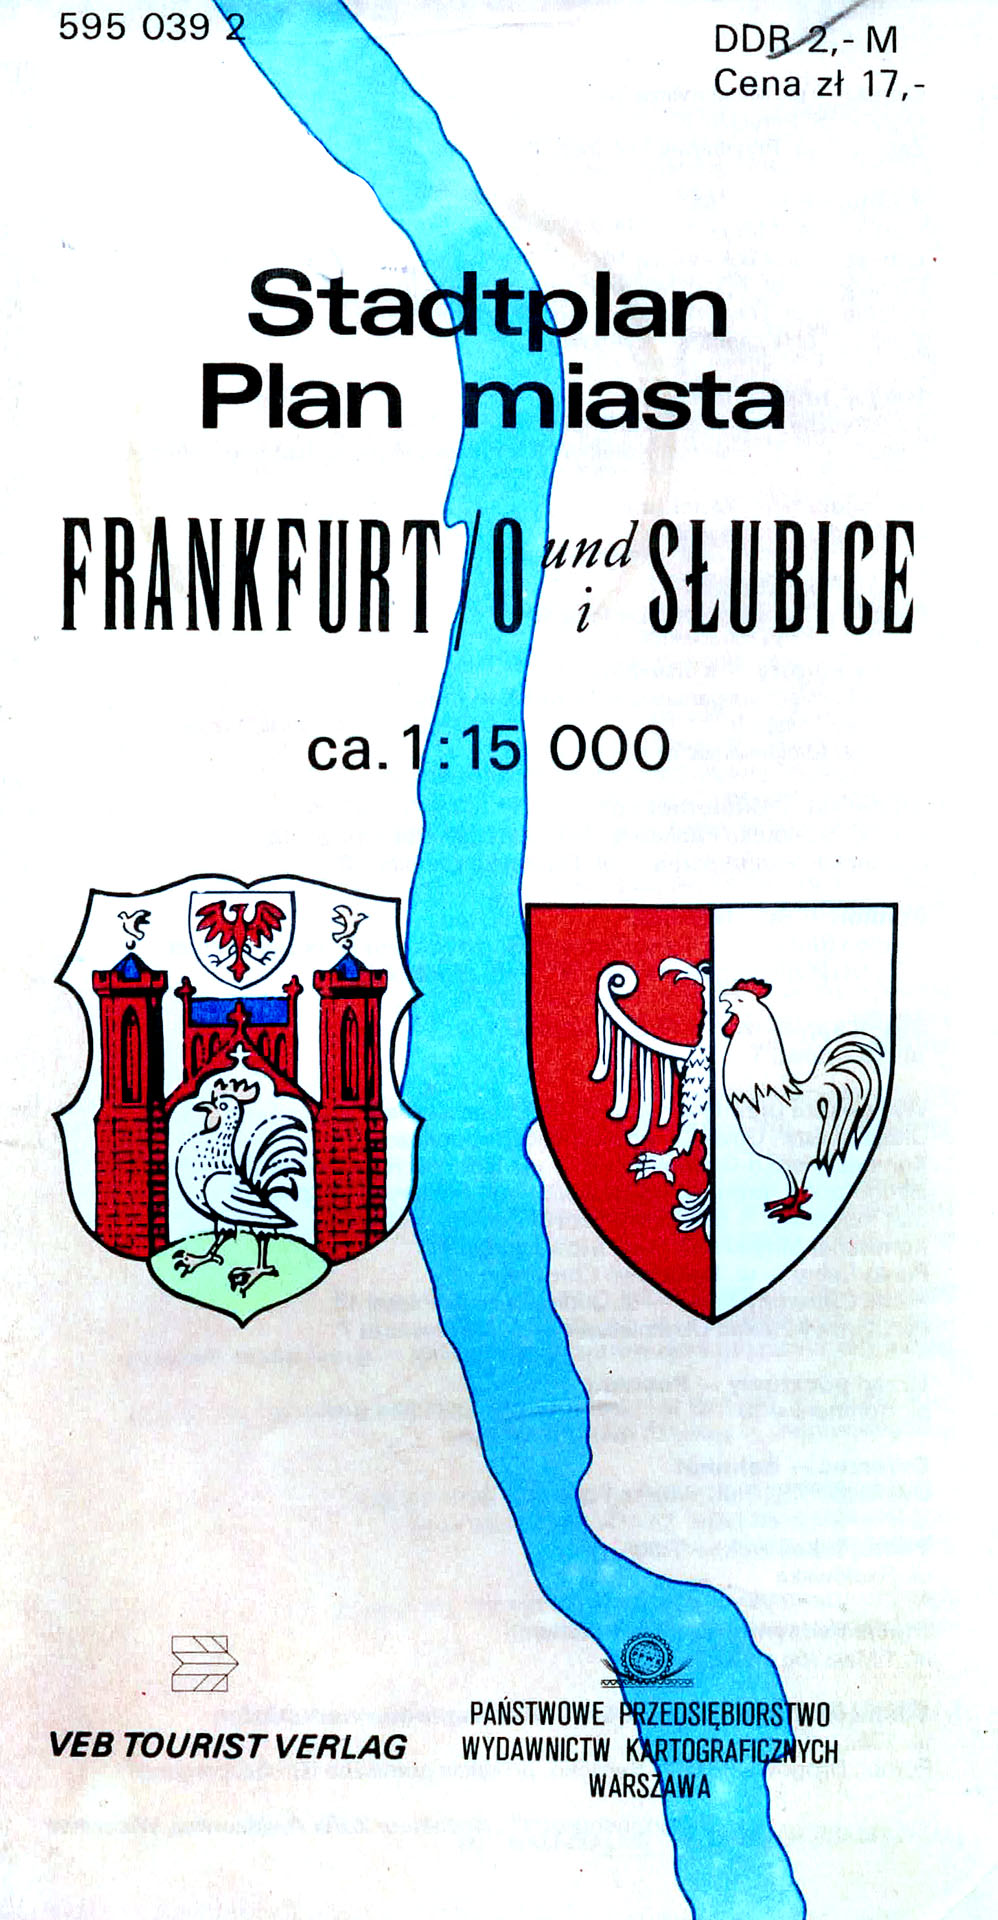 Stadtplan Frankfurt / Oder und Slubice